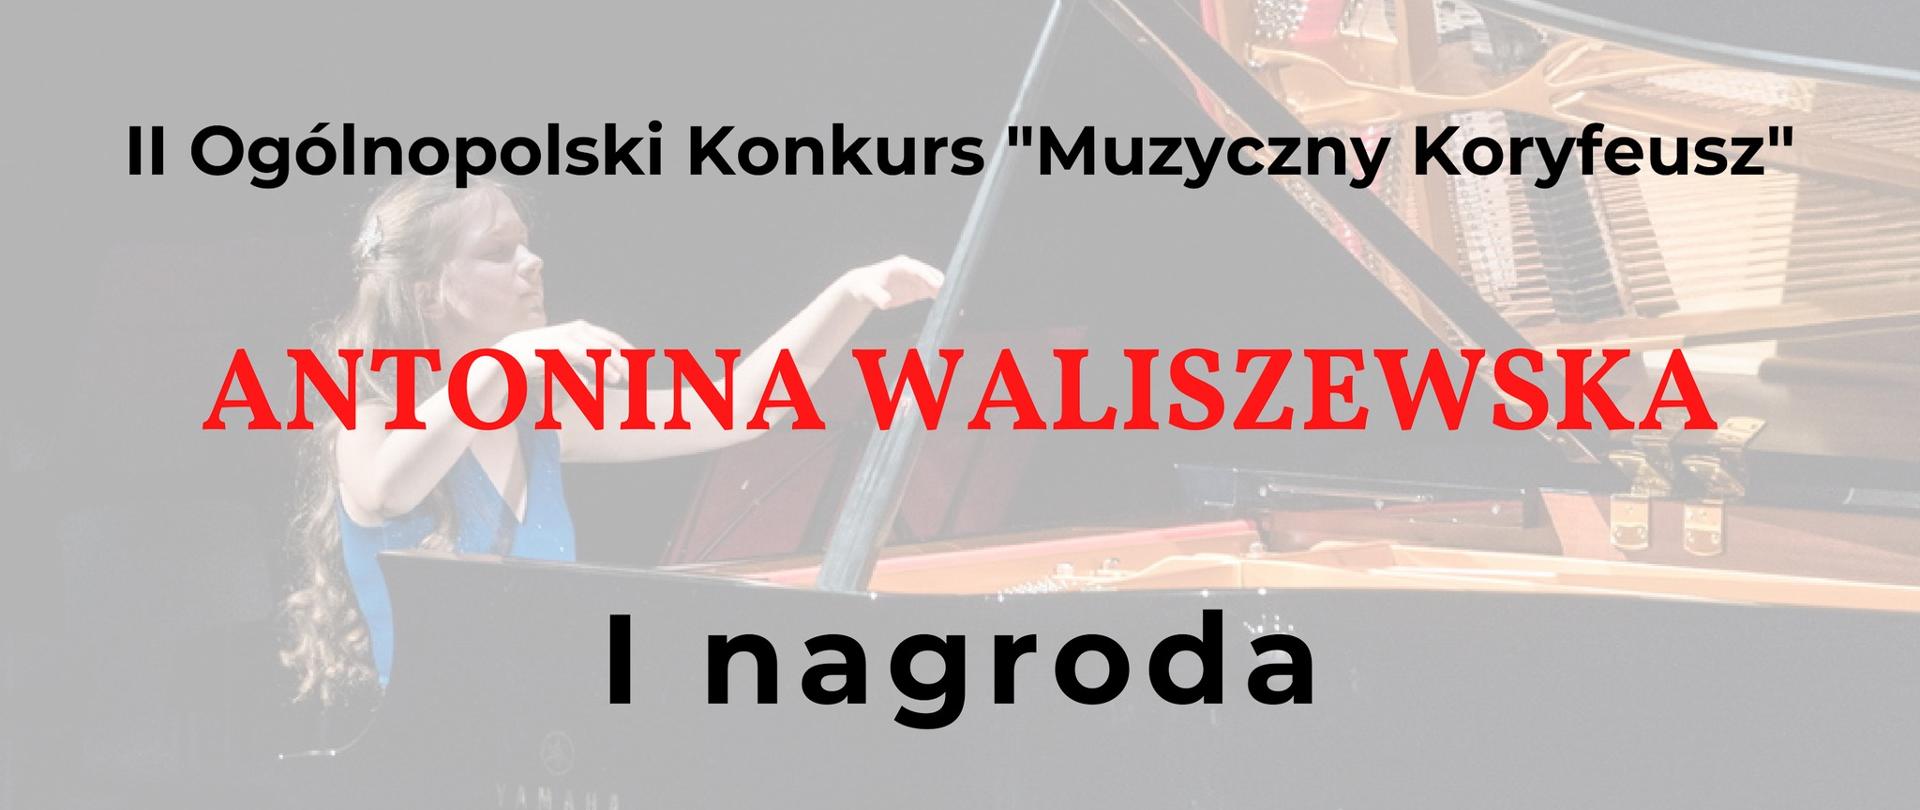 Dyplom w tle postac Antoniny Waliszewskiej przy fortepianie, na dyplomie napis I nagroda i podpisy członków Jury